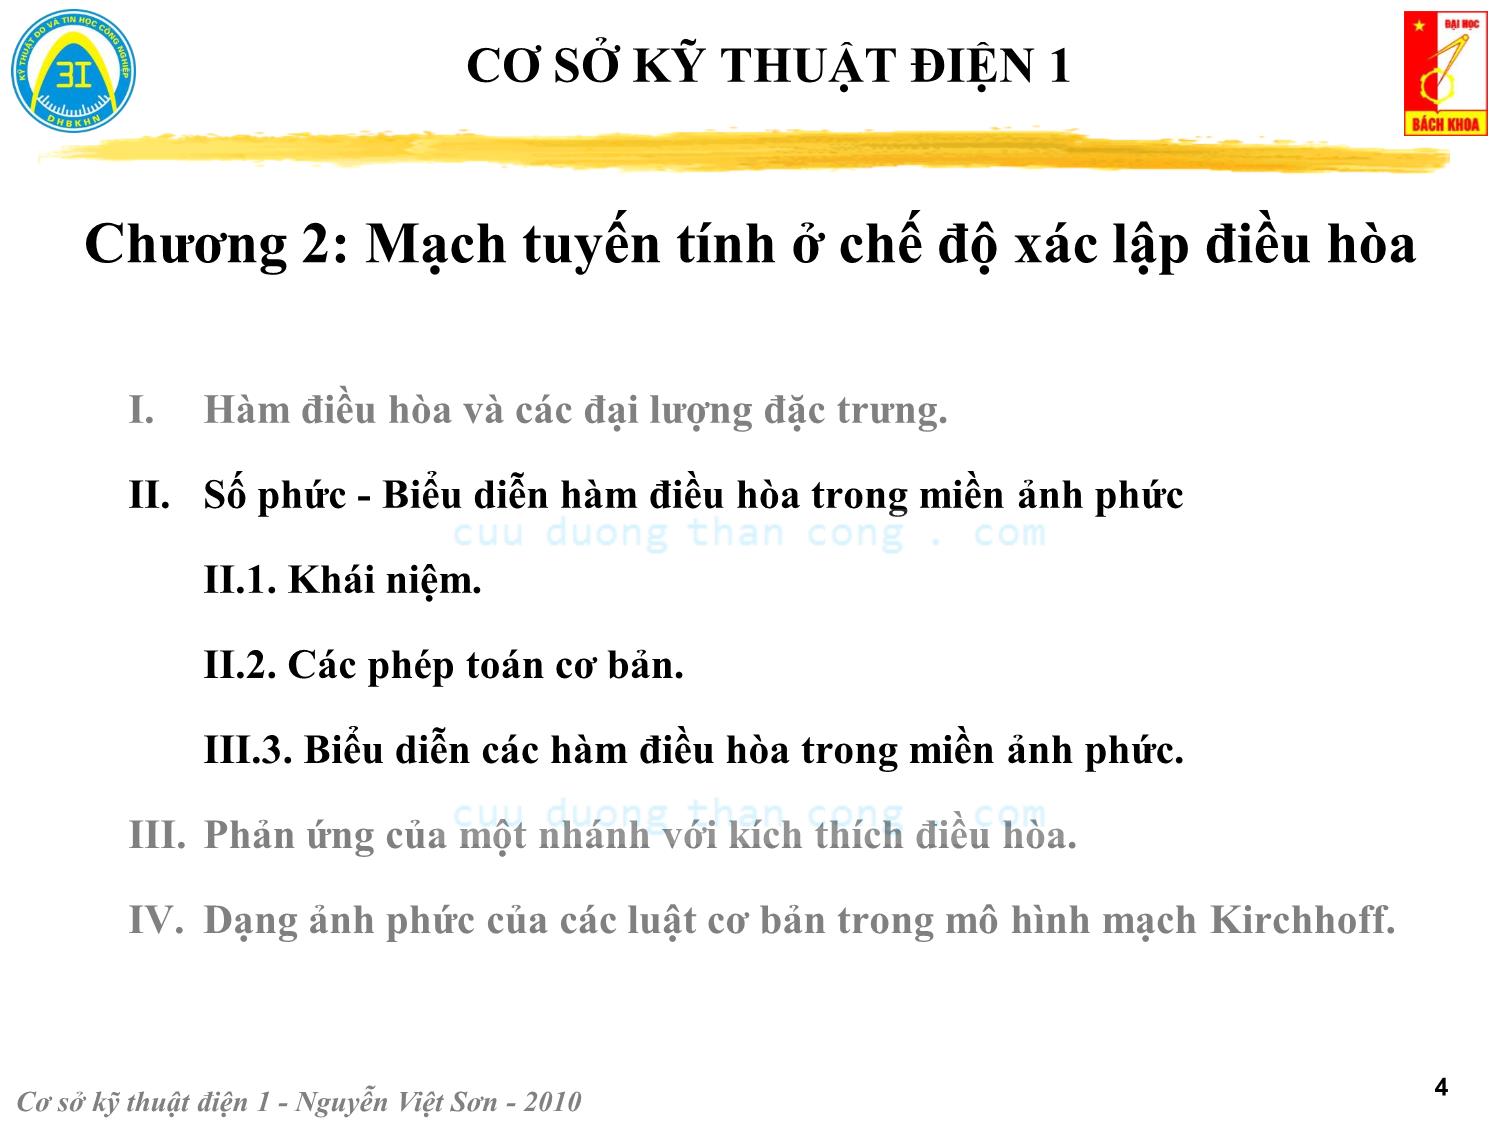 Bài giảng Kỹ thuật điện 1 - Chương 2: Mạch tuyến tính ở chế độ xác lập điều hòa - Nguyễn Việt Sơn trang 4